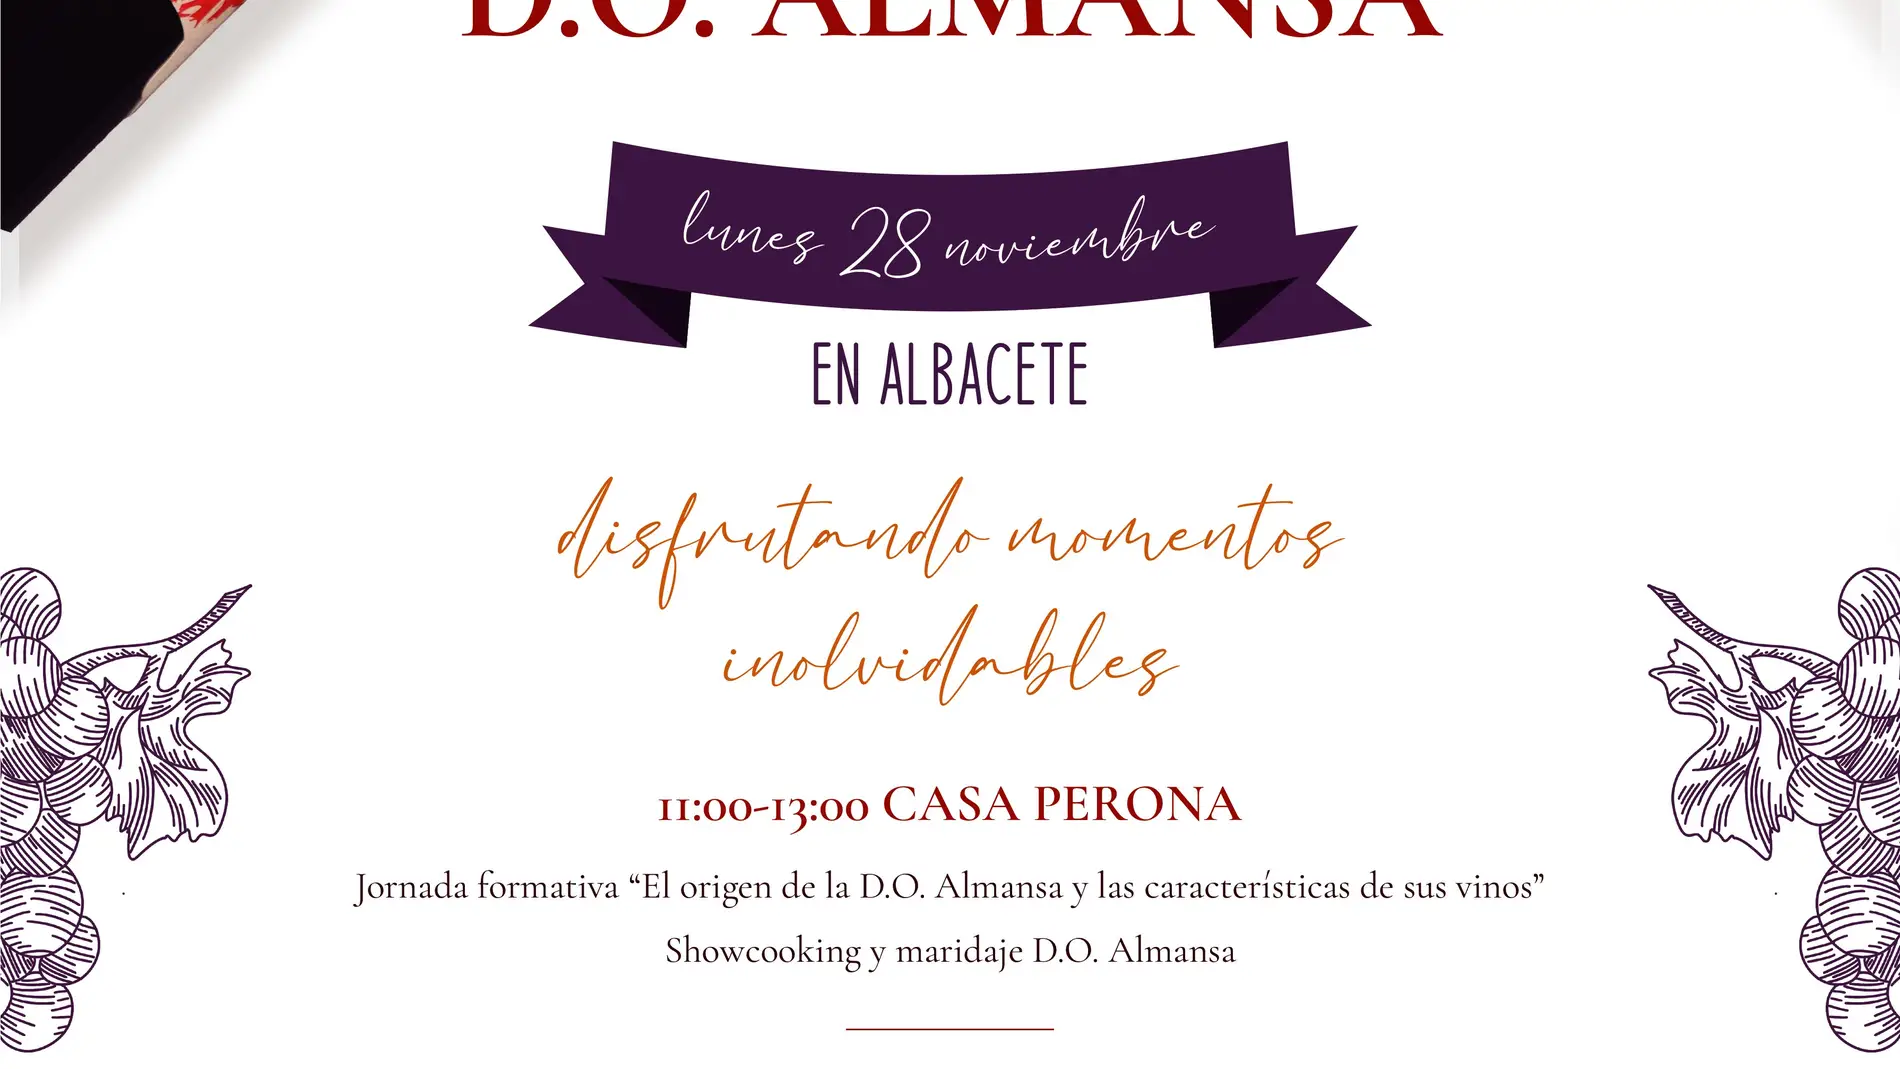 La D.O. Almansa nos invita a “disfrutar momentos inolvidables” en una Jornada el próximo 28 de noviembre en la Casa Perona